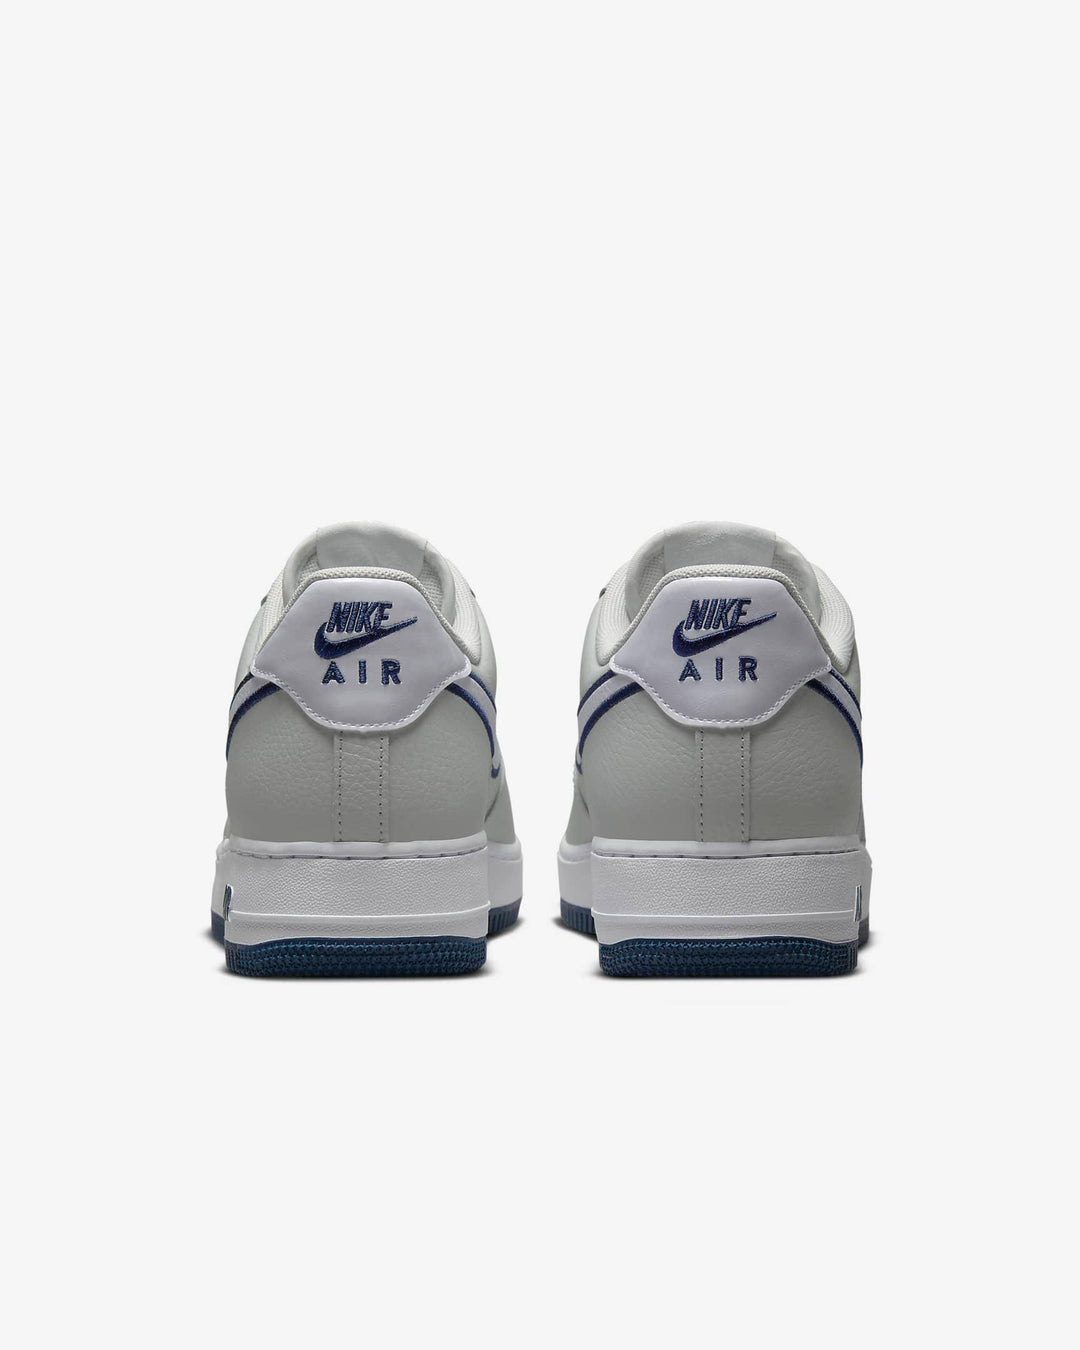 Giày Nike Air Force 1 '07 Men Shoes #Photon Dust - Kallos Vietnam